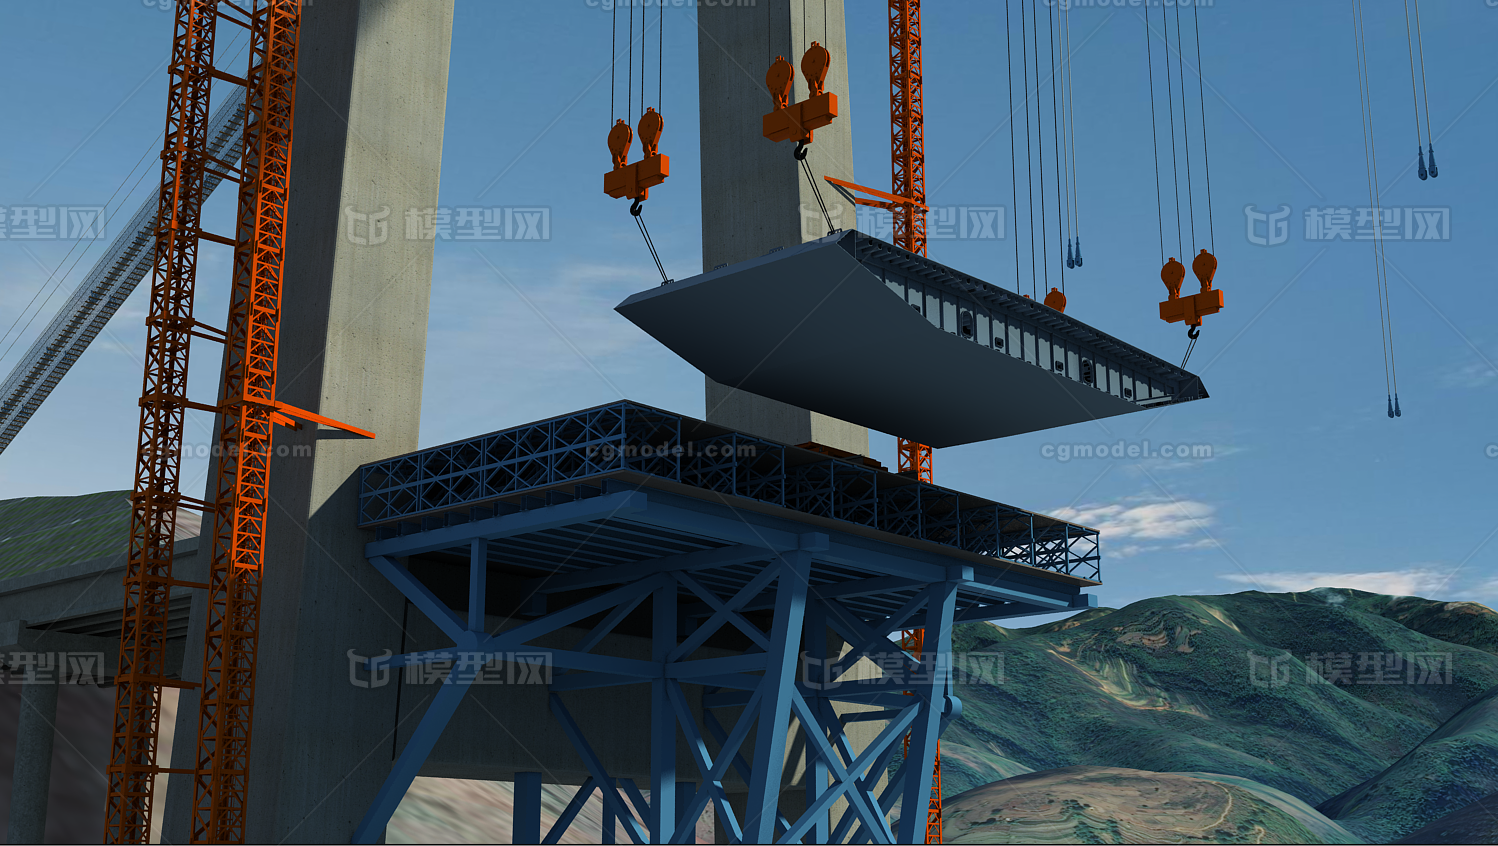 桥梁施工 悬索桥施工现场,桥梁主体吊装动画 声明:该资源由发布人:【a